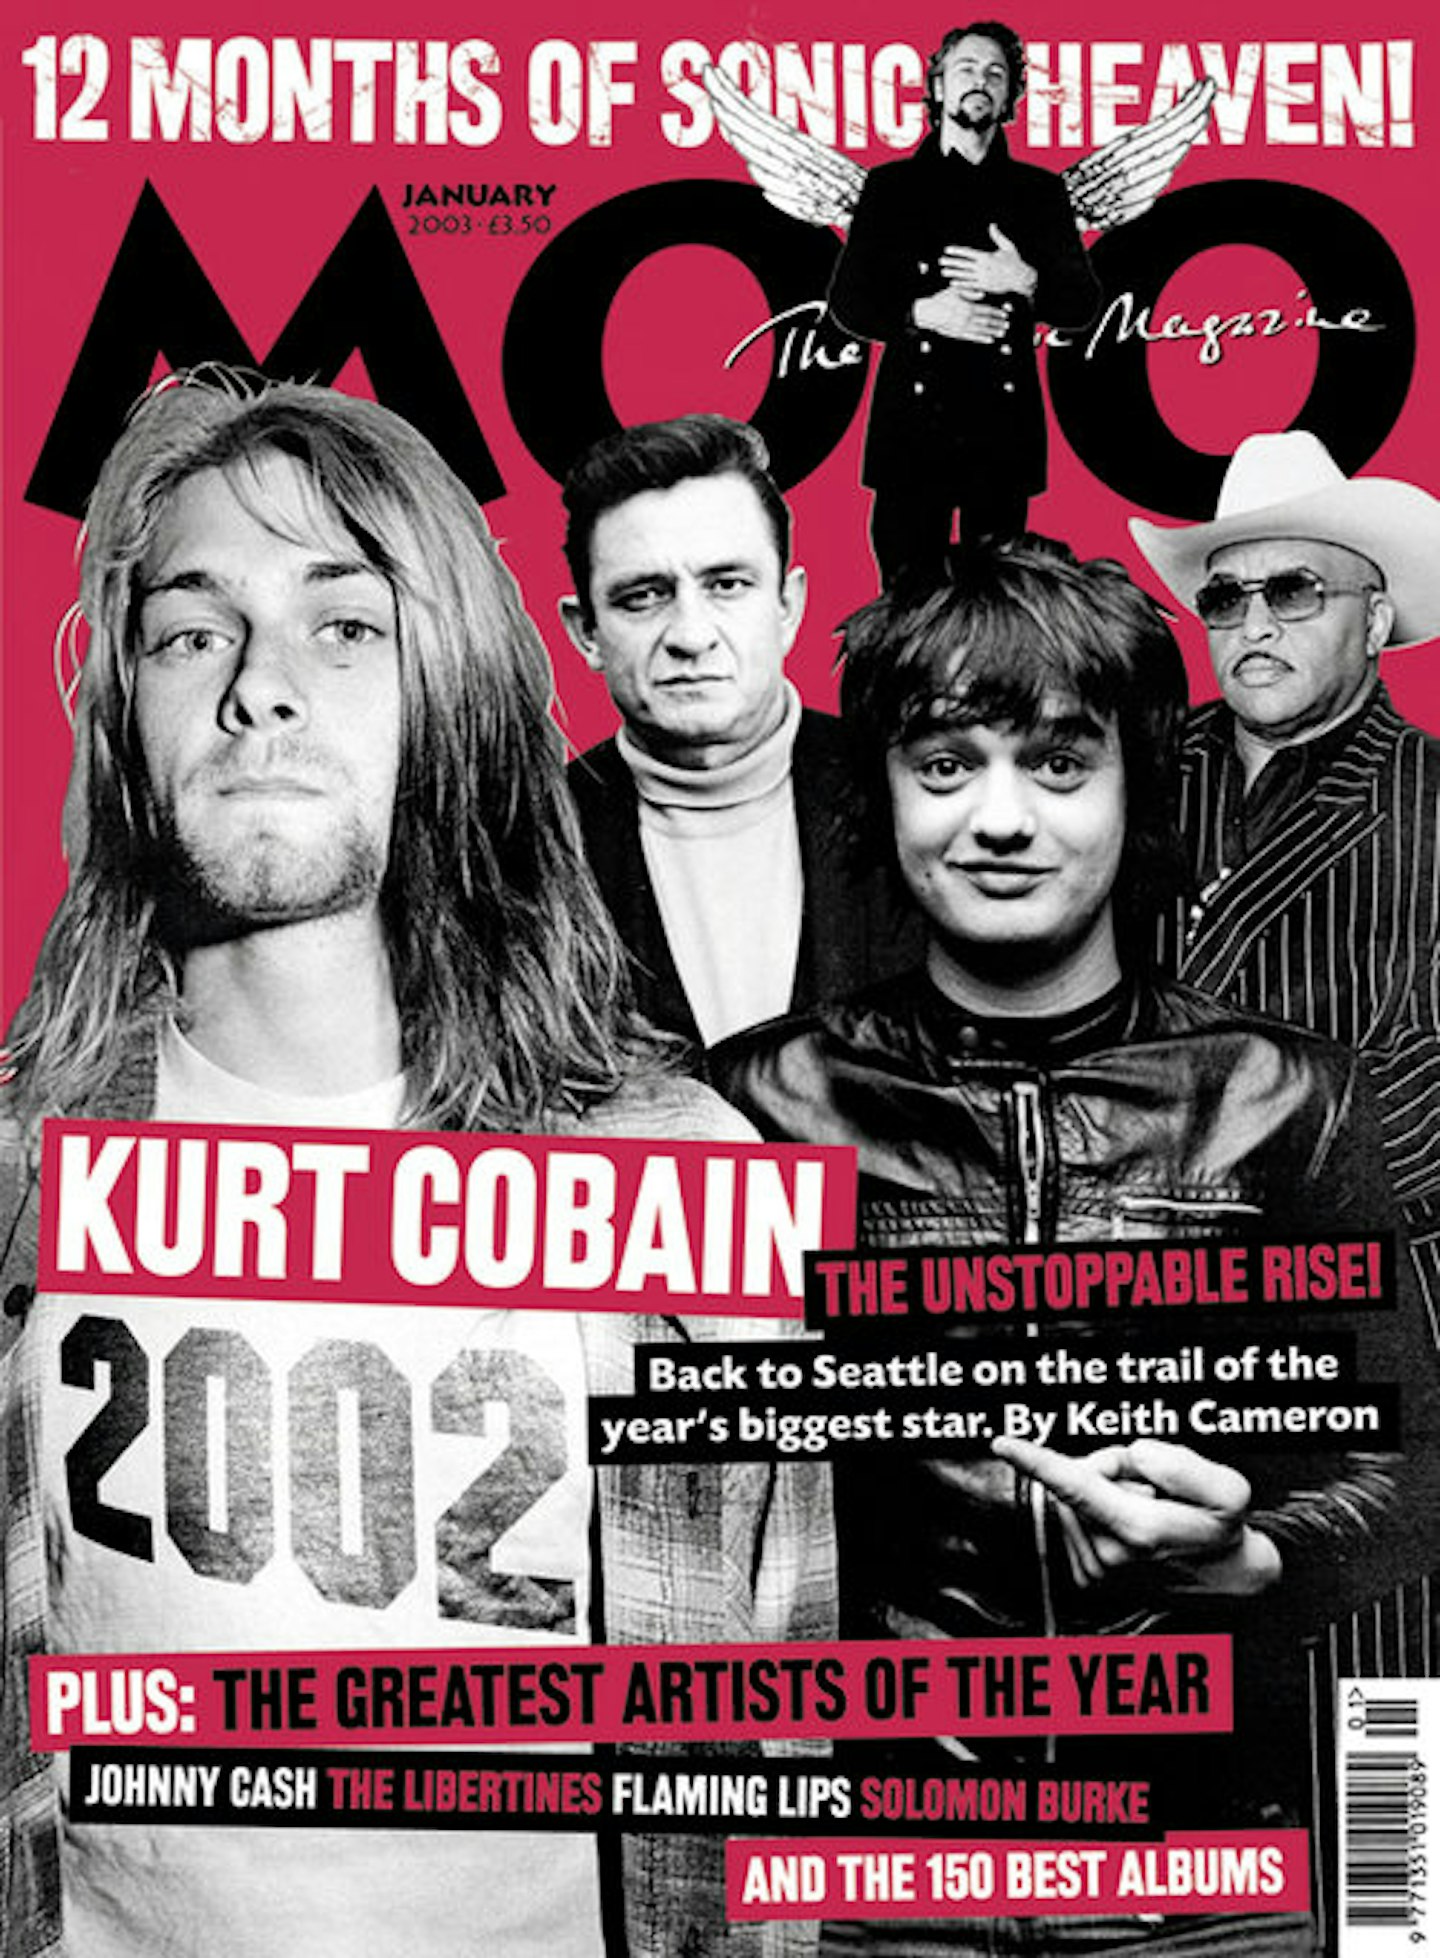 MOJO Issue 110 / January 2003